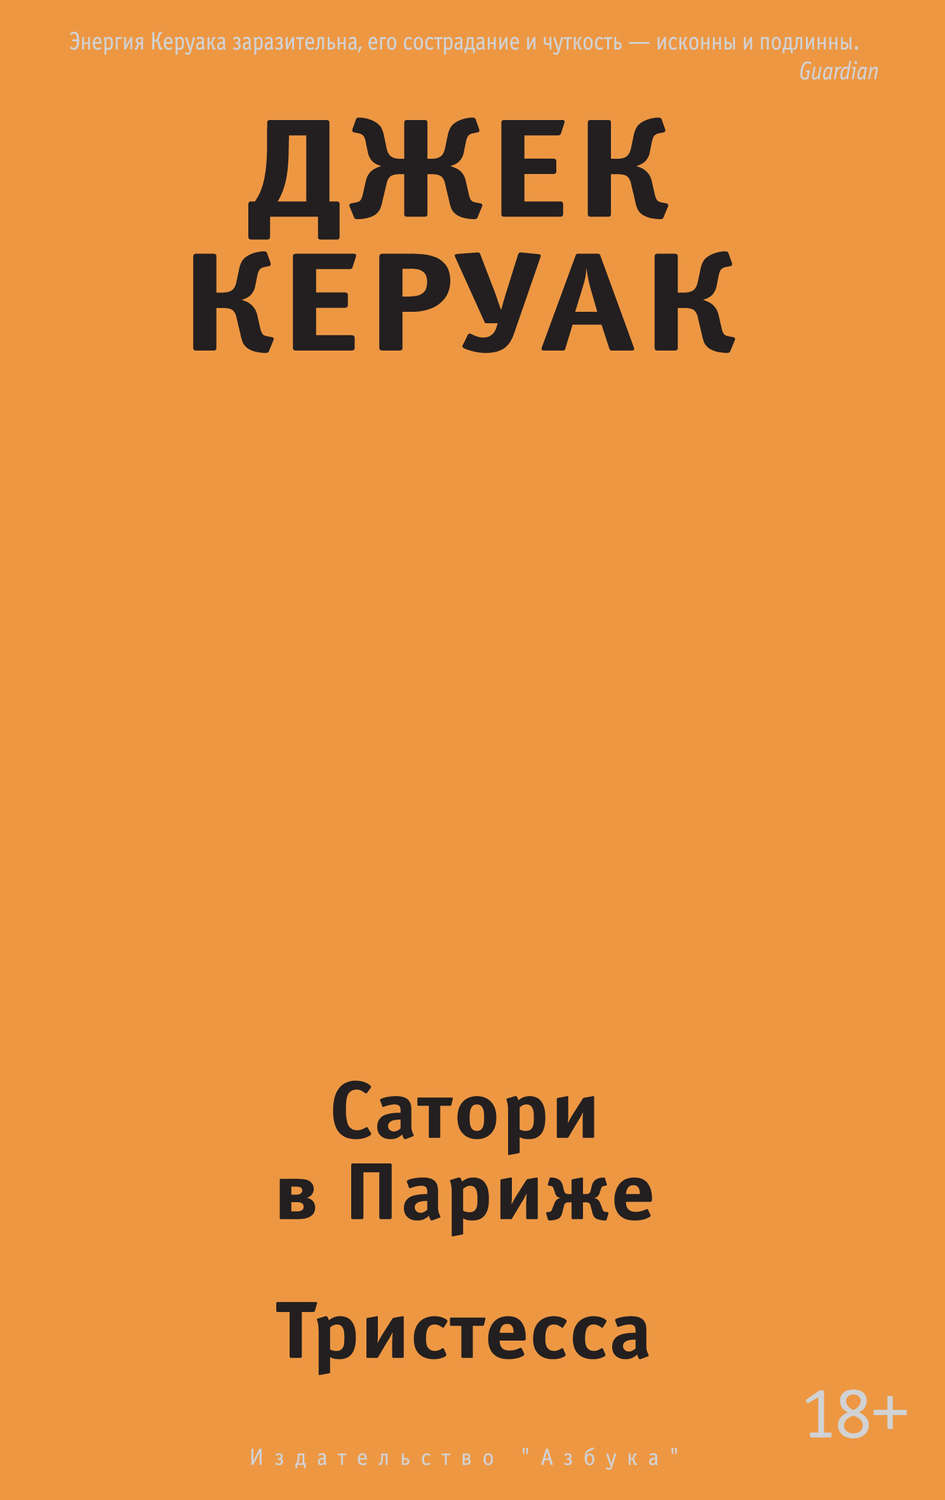 Сатори скачать книгу на русском